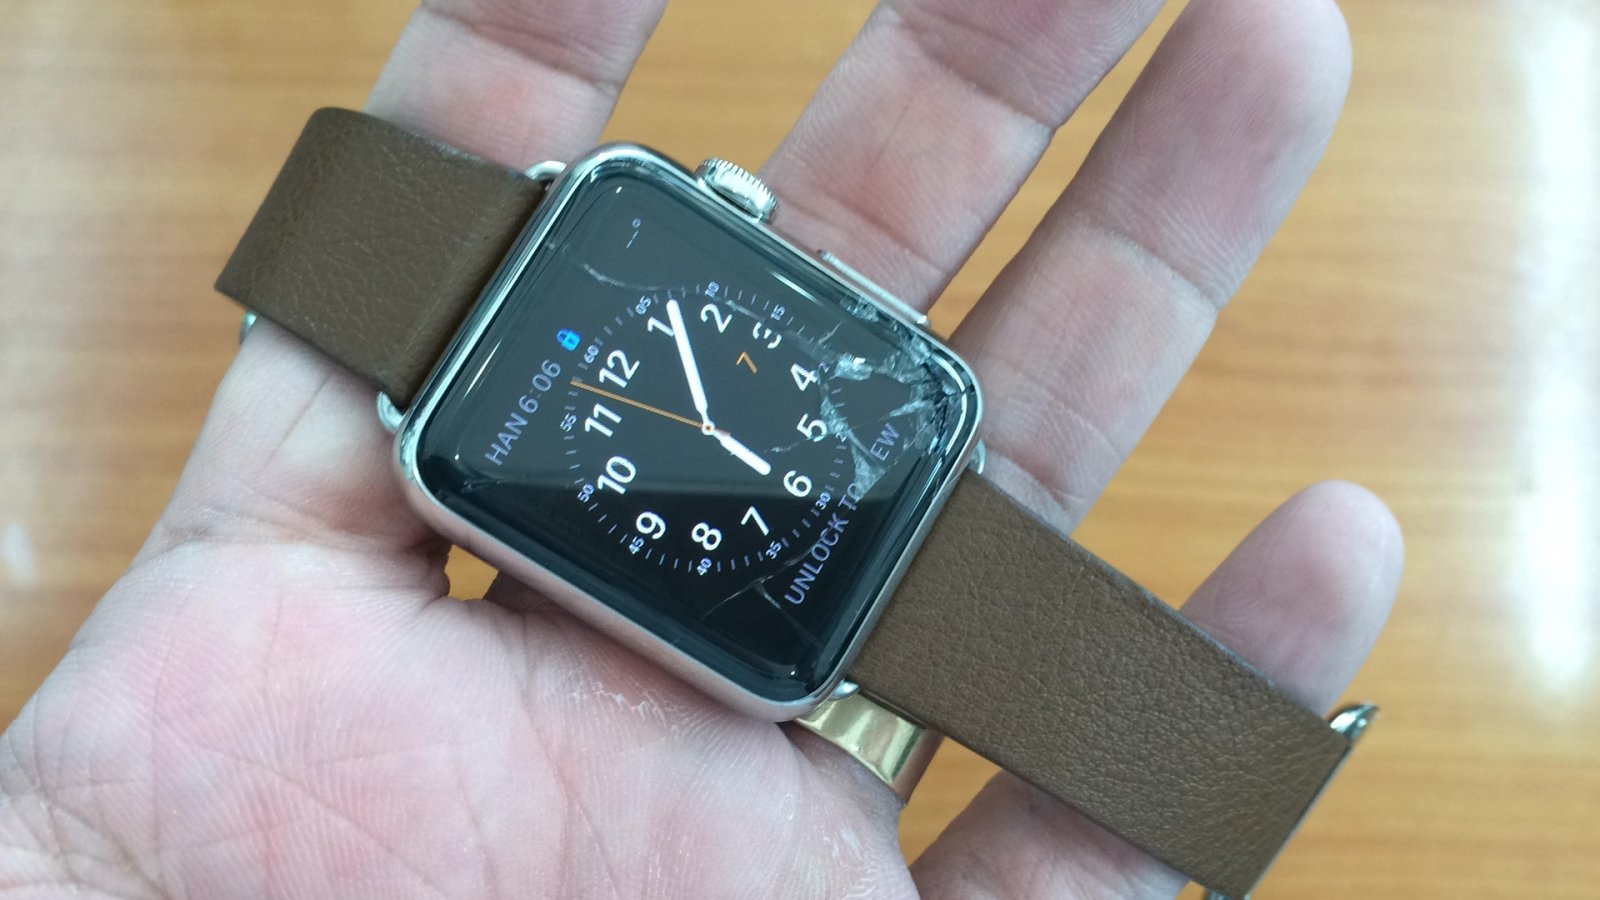 Trùm ép thay mặt kính cảm ứng apple watch chính hãng giá rẻ tphcm